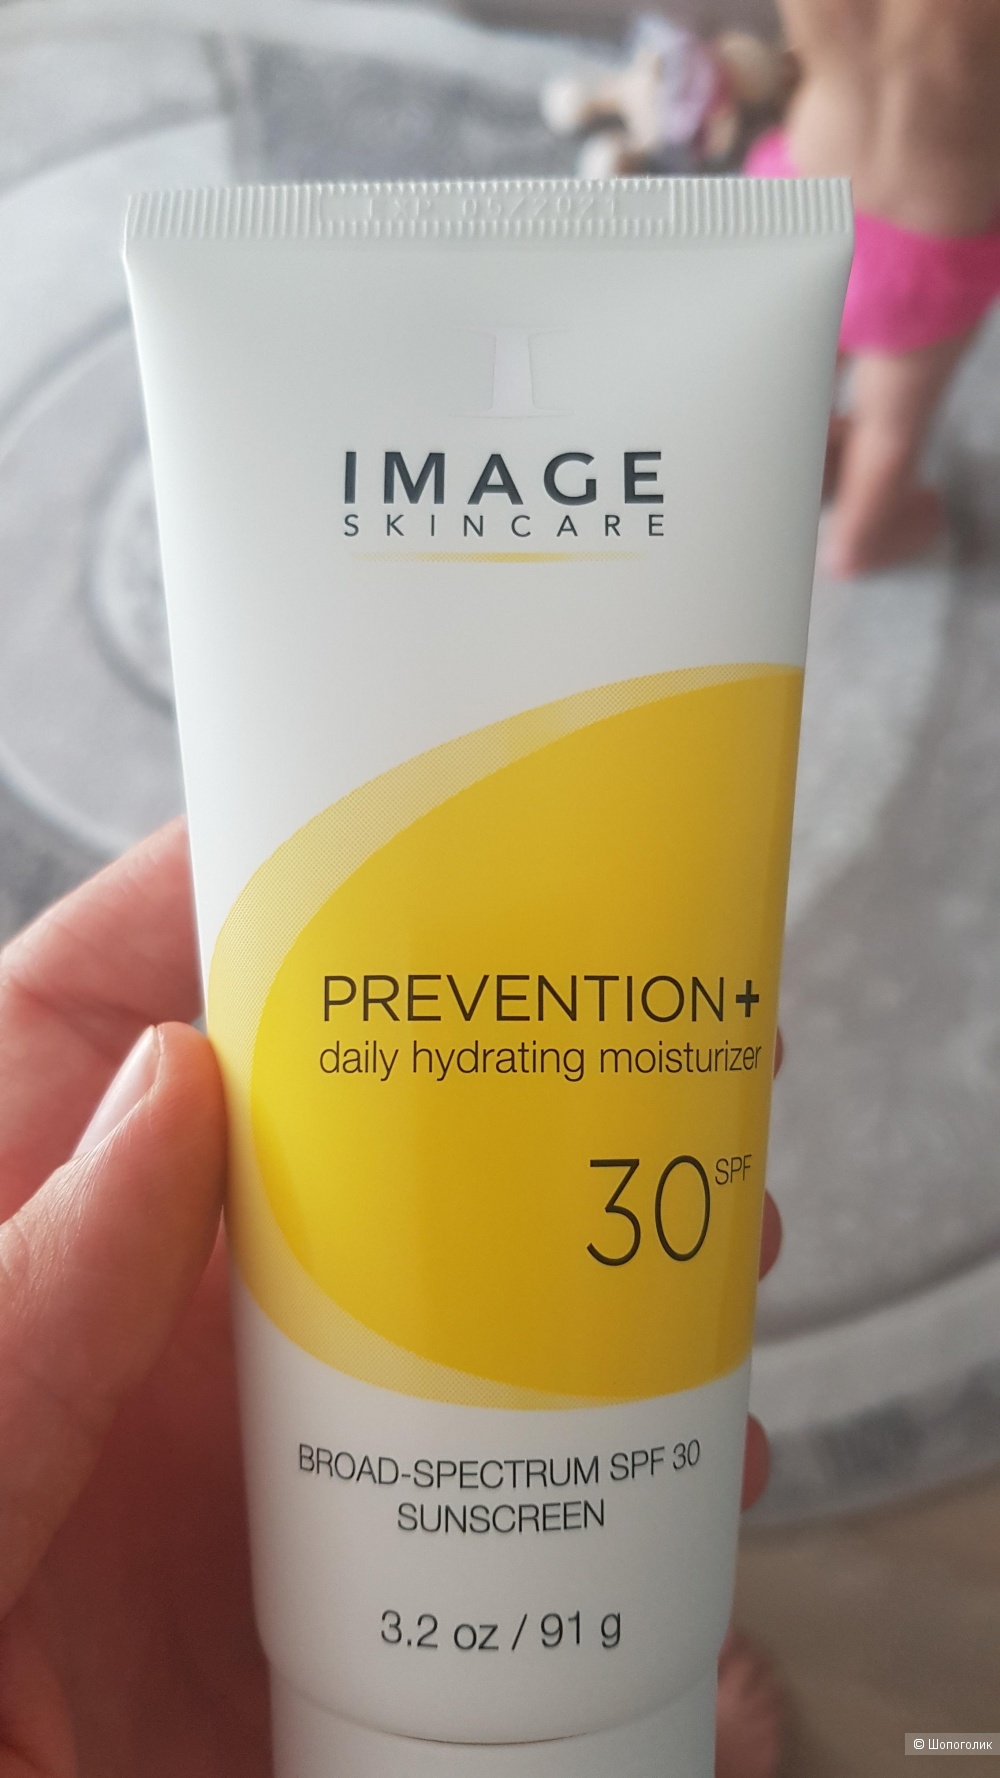 Дневной крем Image skincare prevention spf 30